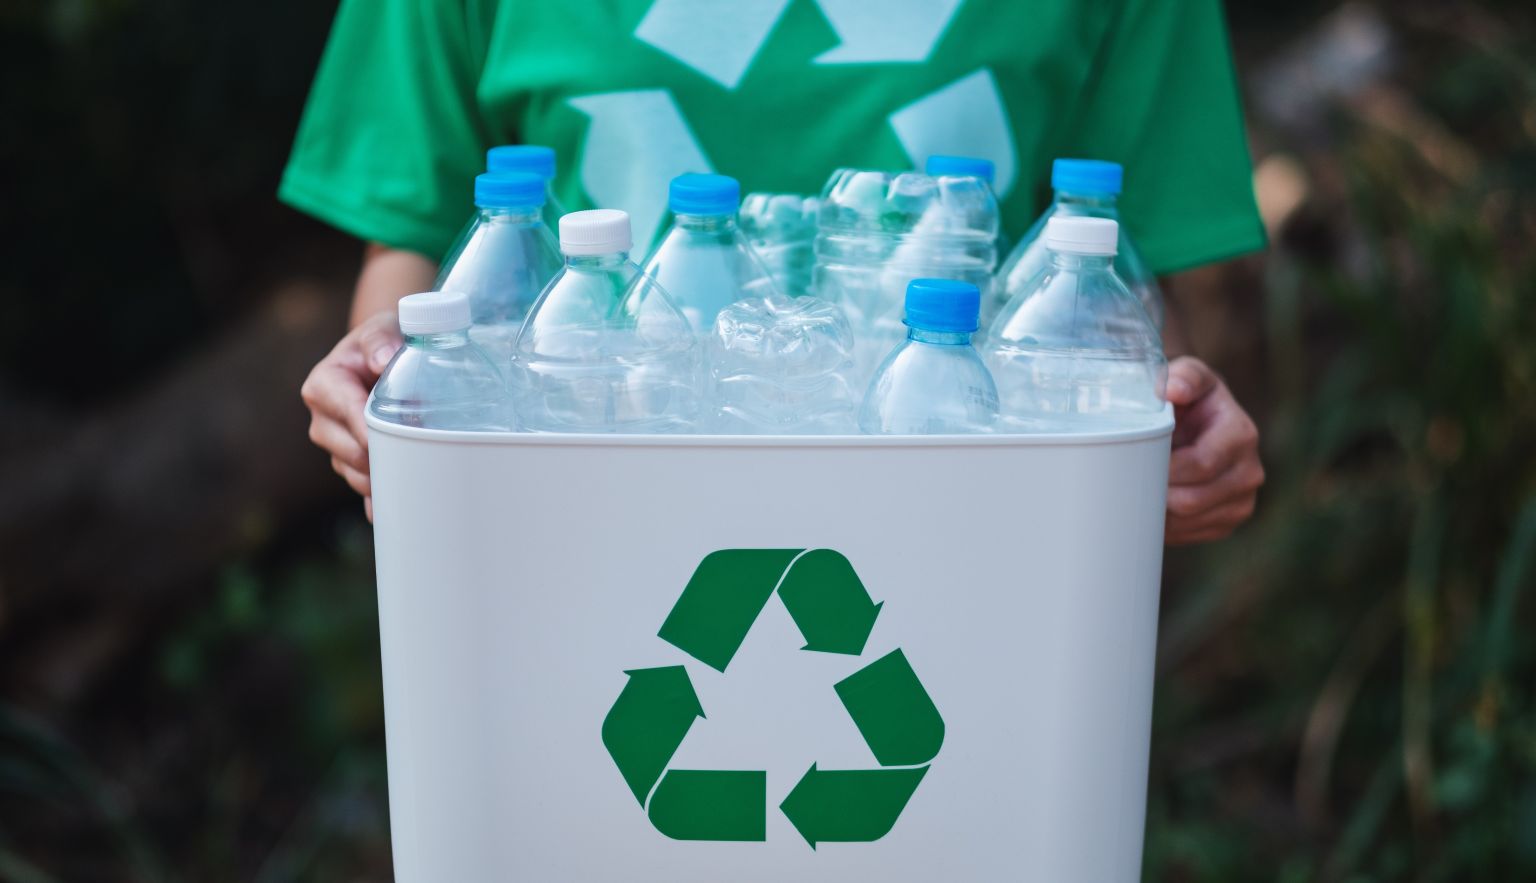 Kunststoffverpackungssammlung wird ab 2023 vereinheitlicht